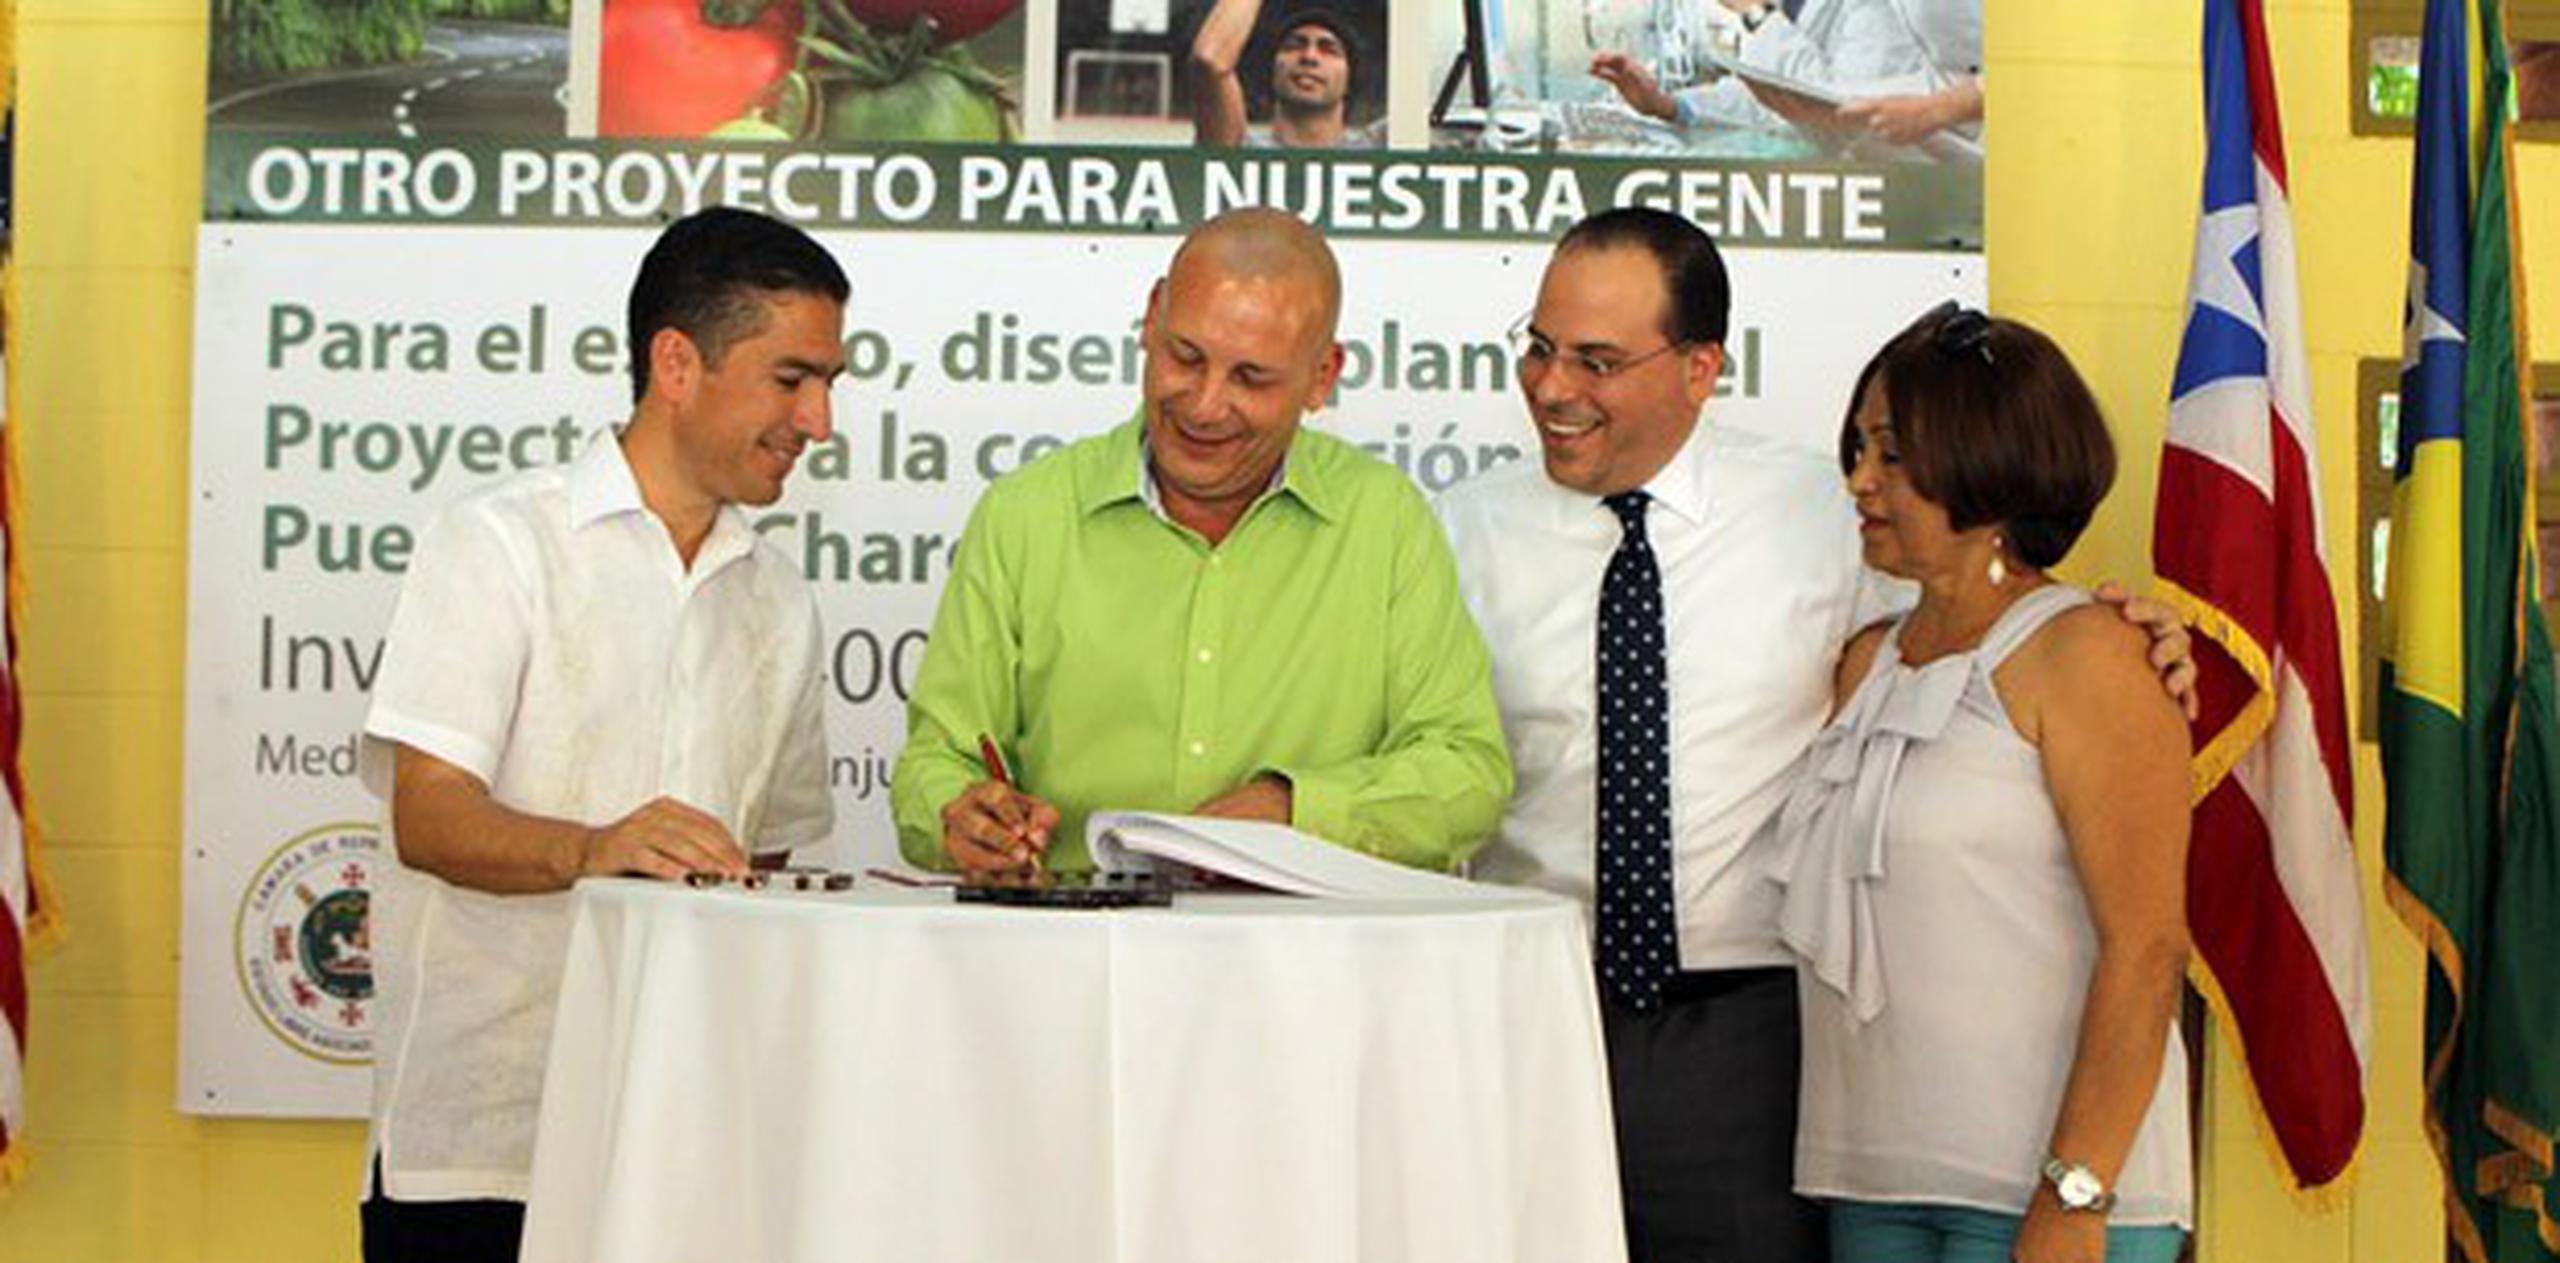 Para dar inicio a la obra del puente del barrio La Charca, el alcalde de Aguas Buenas, Luis Arroyo Chiqués, y el presidente cameral, Jaime Perelló, firmaron un contrato hoy. (Suministrada)